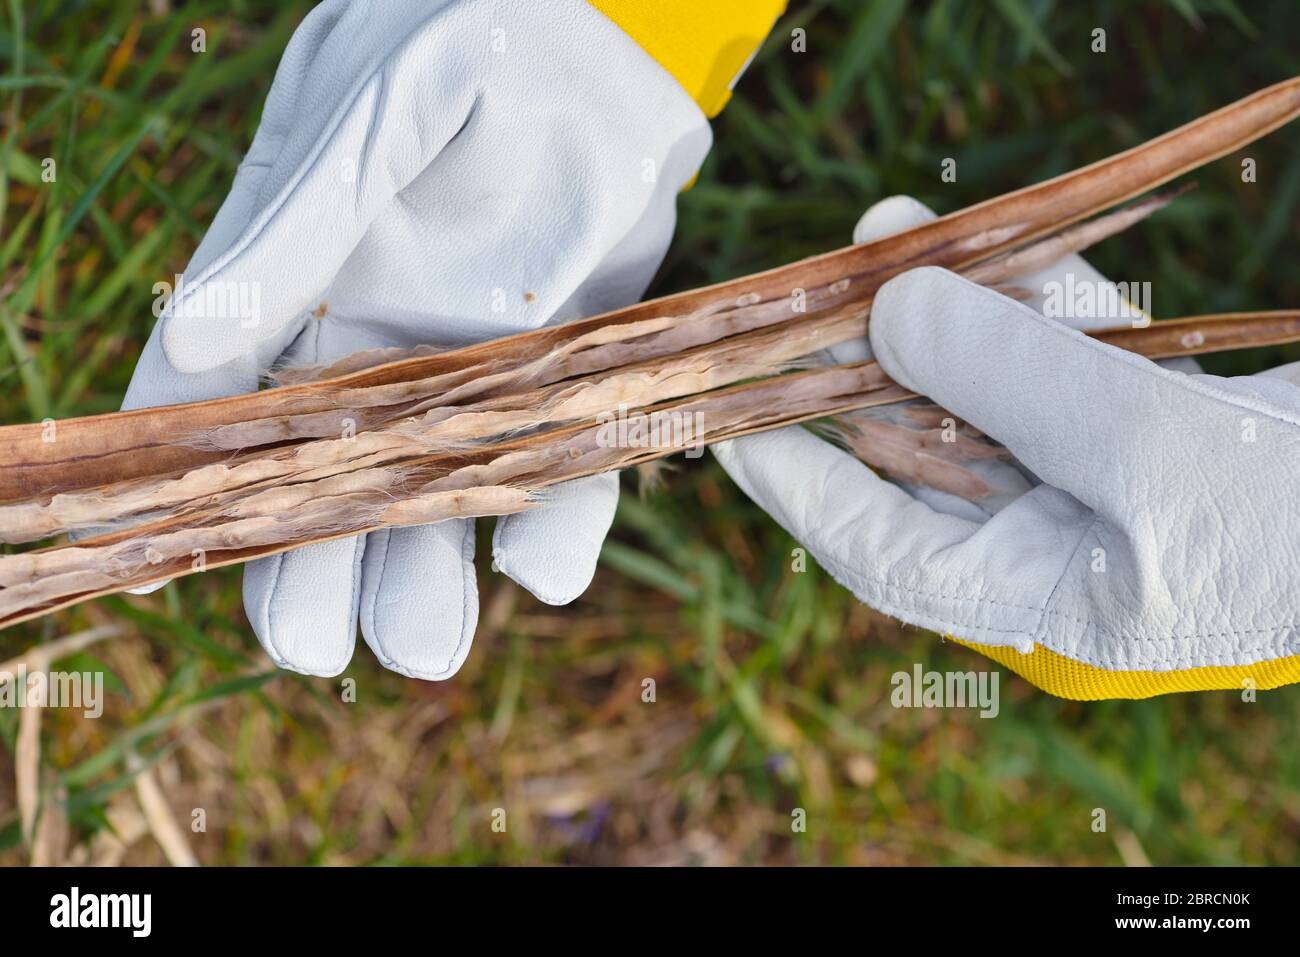 Getrocknete Bohnen Hülsen von Catalpa Baum in den Händen des Gärtners Stockfoto